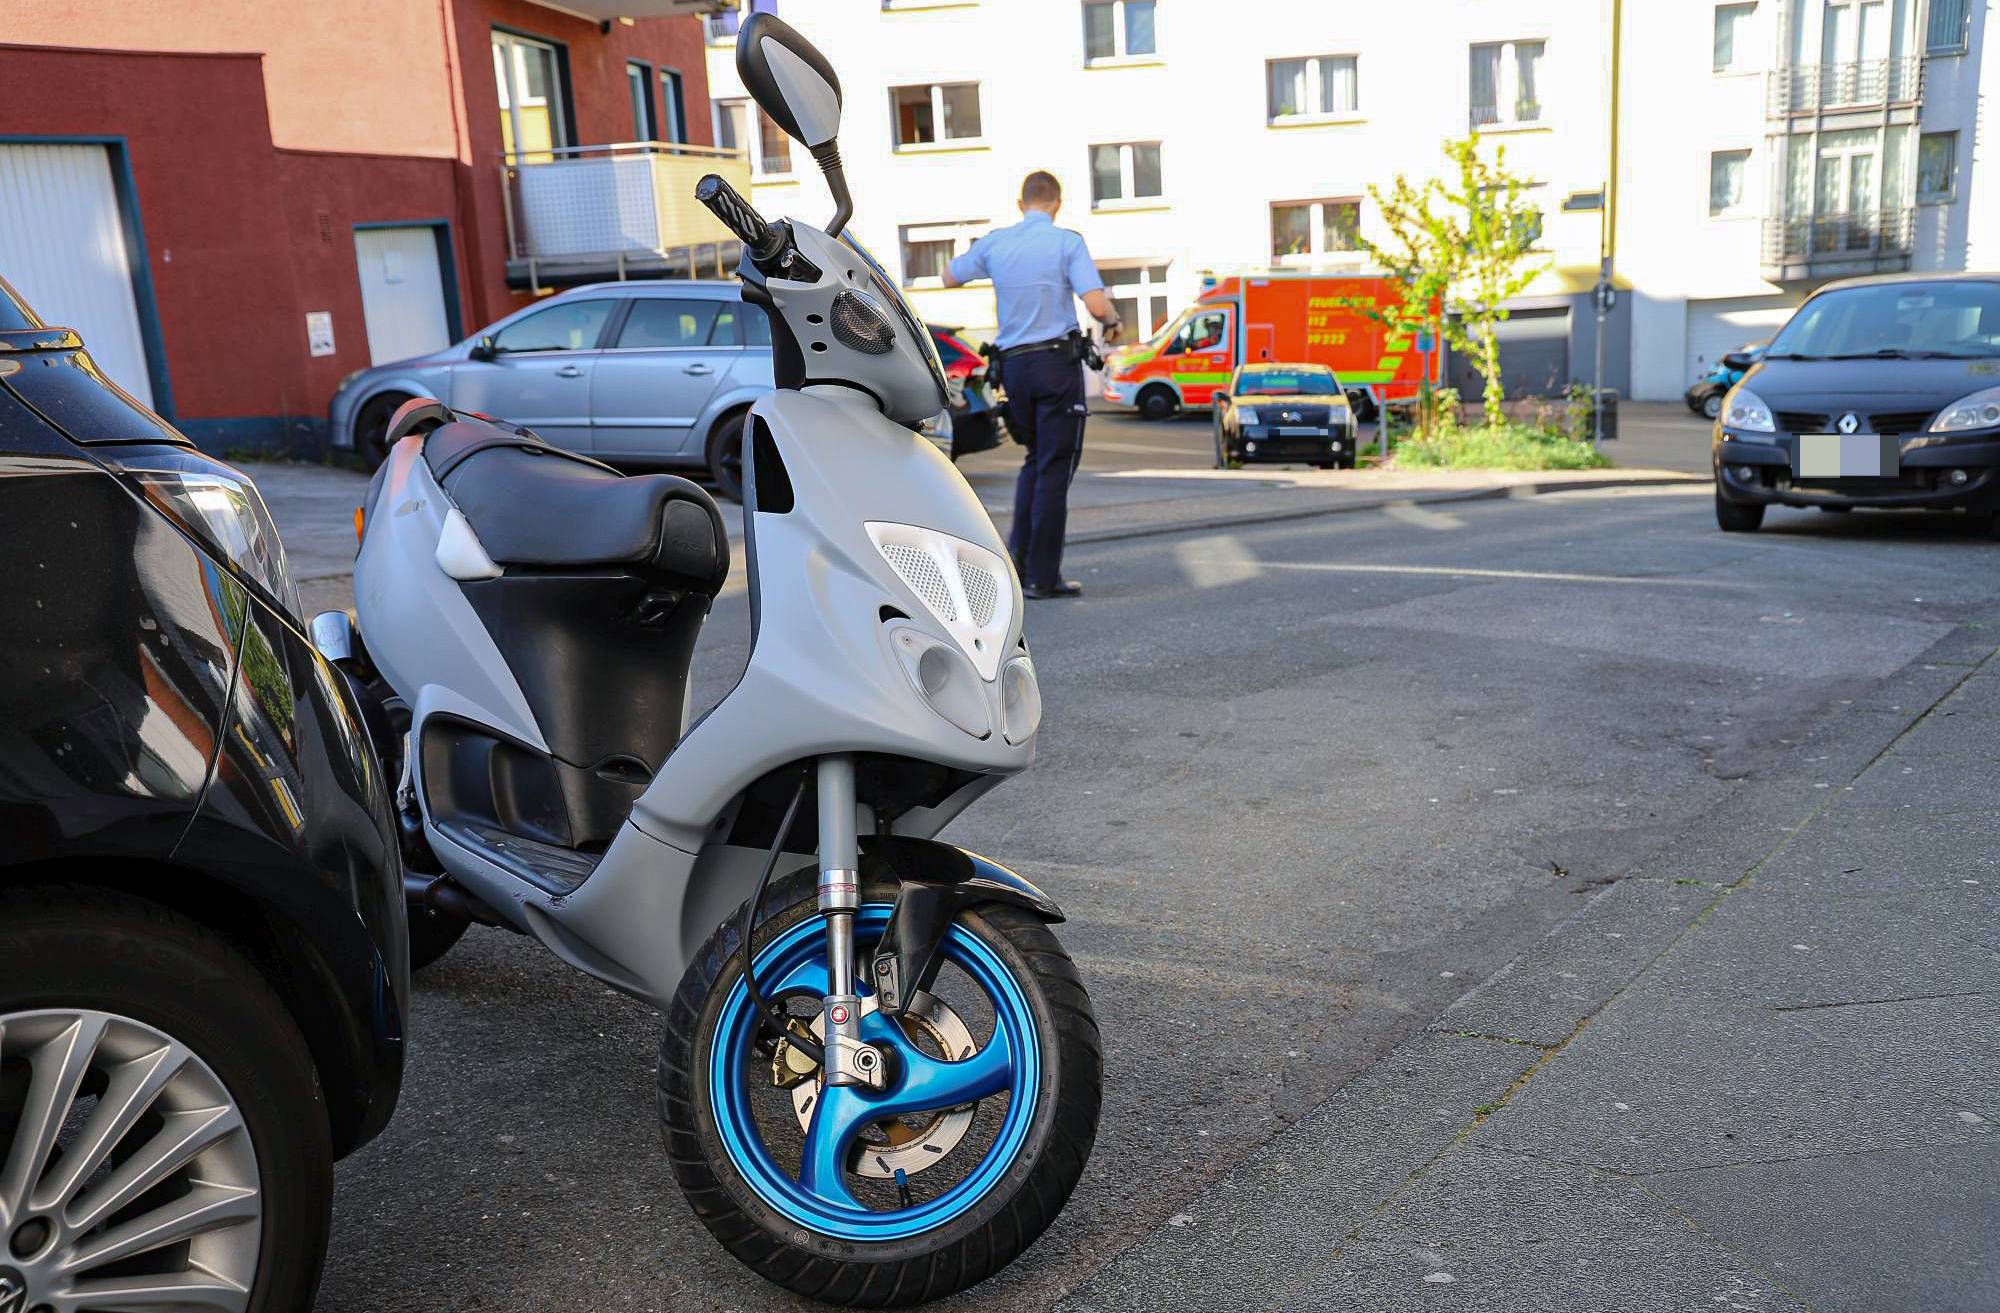  Mit diesem Moped wollte der 29-Jährige vor der Polizei flüchten.  